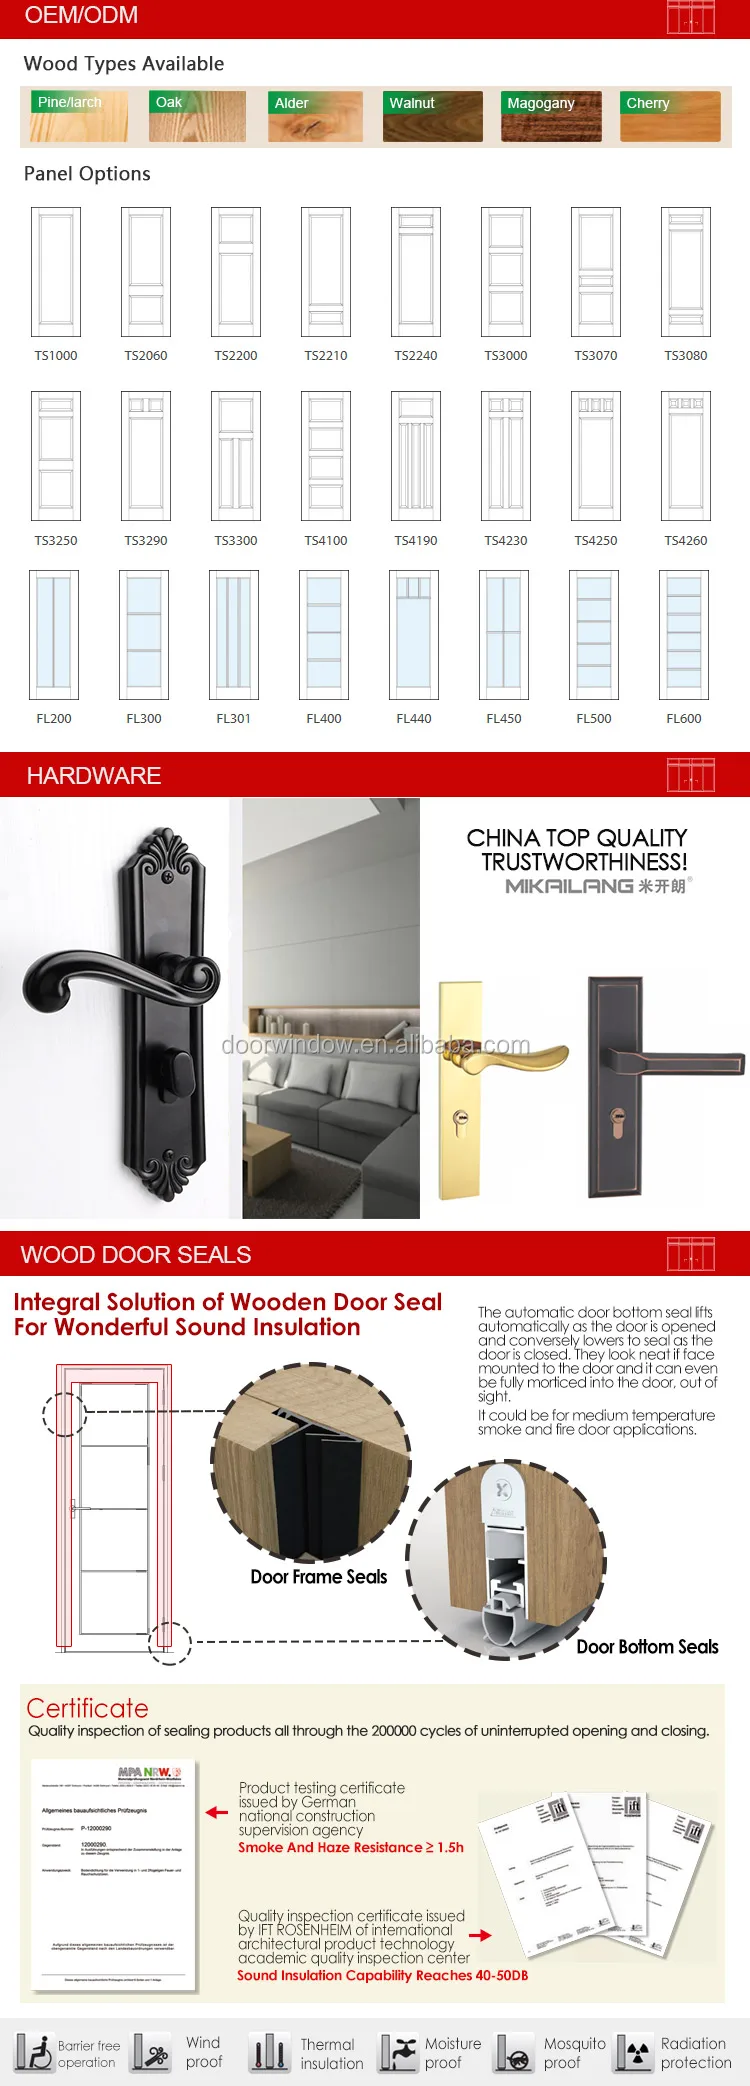 wood veneer MDF board flat panel dressing study room door cheap wooden interior doors